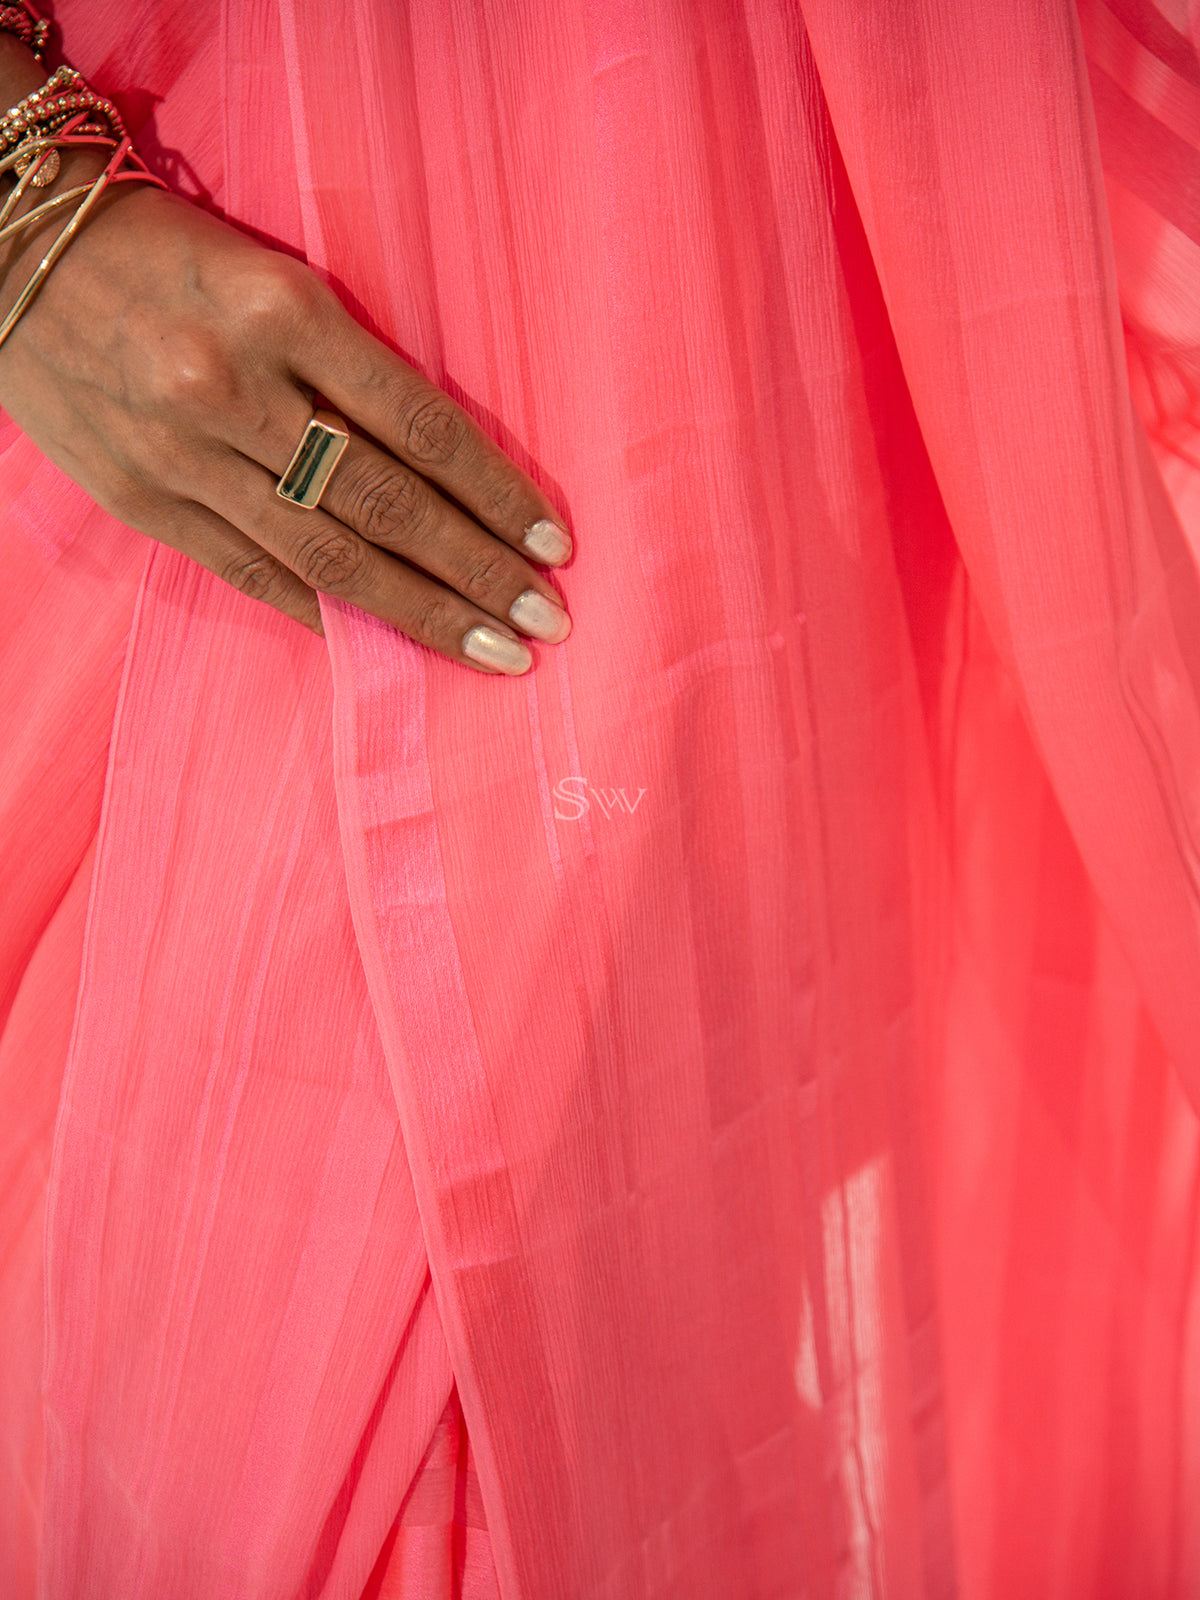 Coral Pink Stripe Satin Georgette Handloom Saree - Sacred Weaves